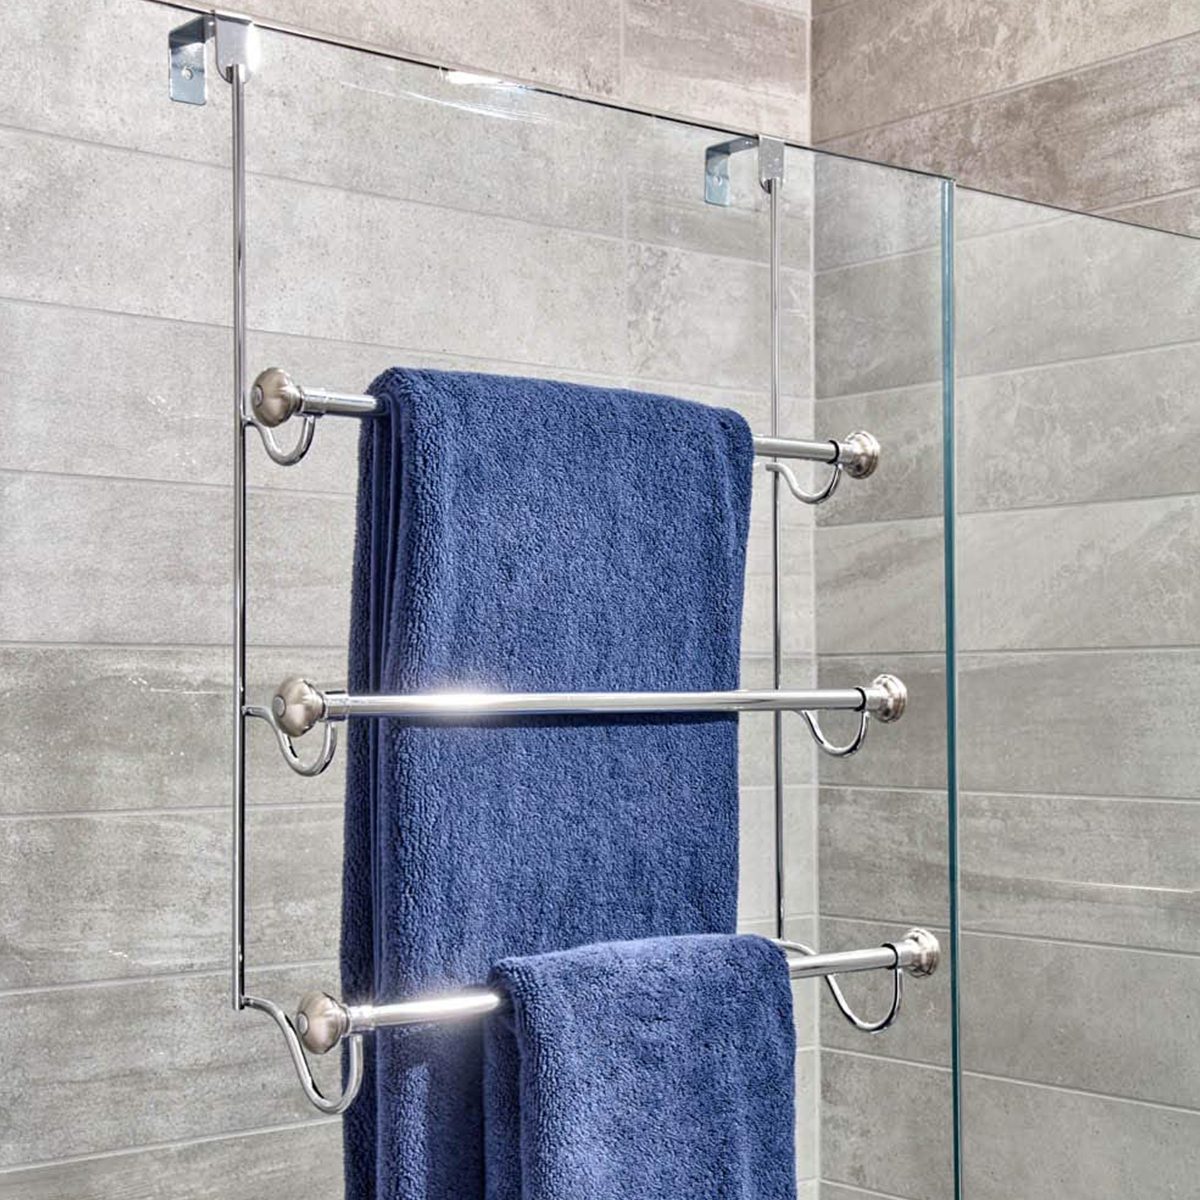 https://www.familyhandyman.com/wp-content/uploads/2021/09/shower-door-towel-rack.jpg?fit=700%2C700